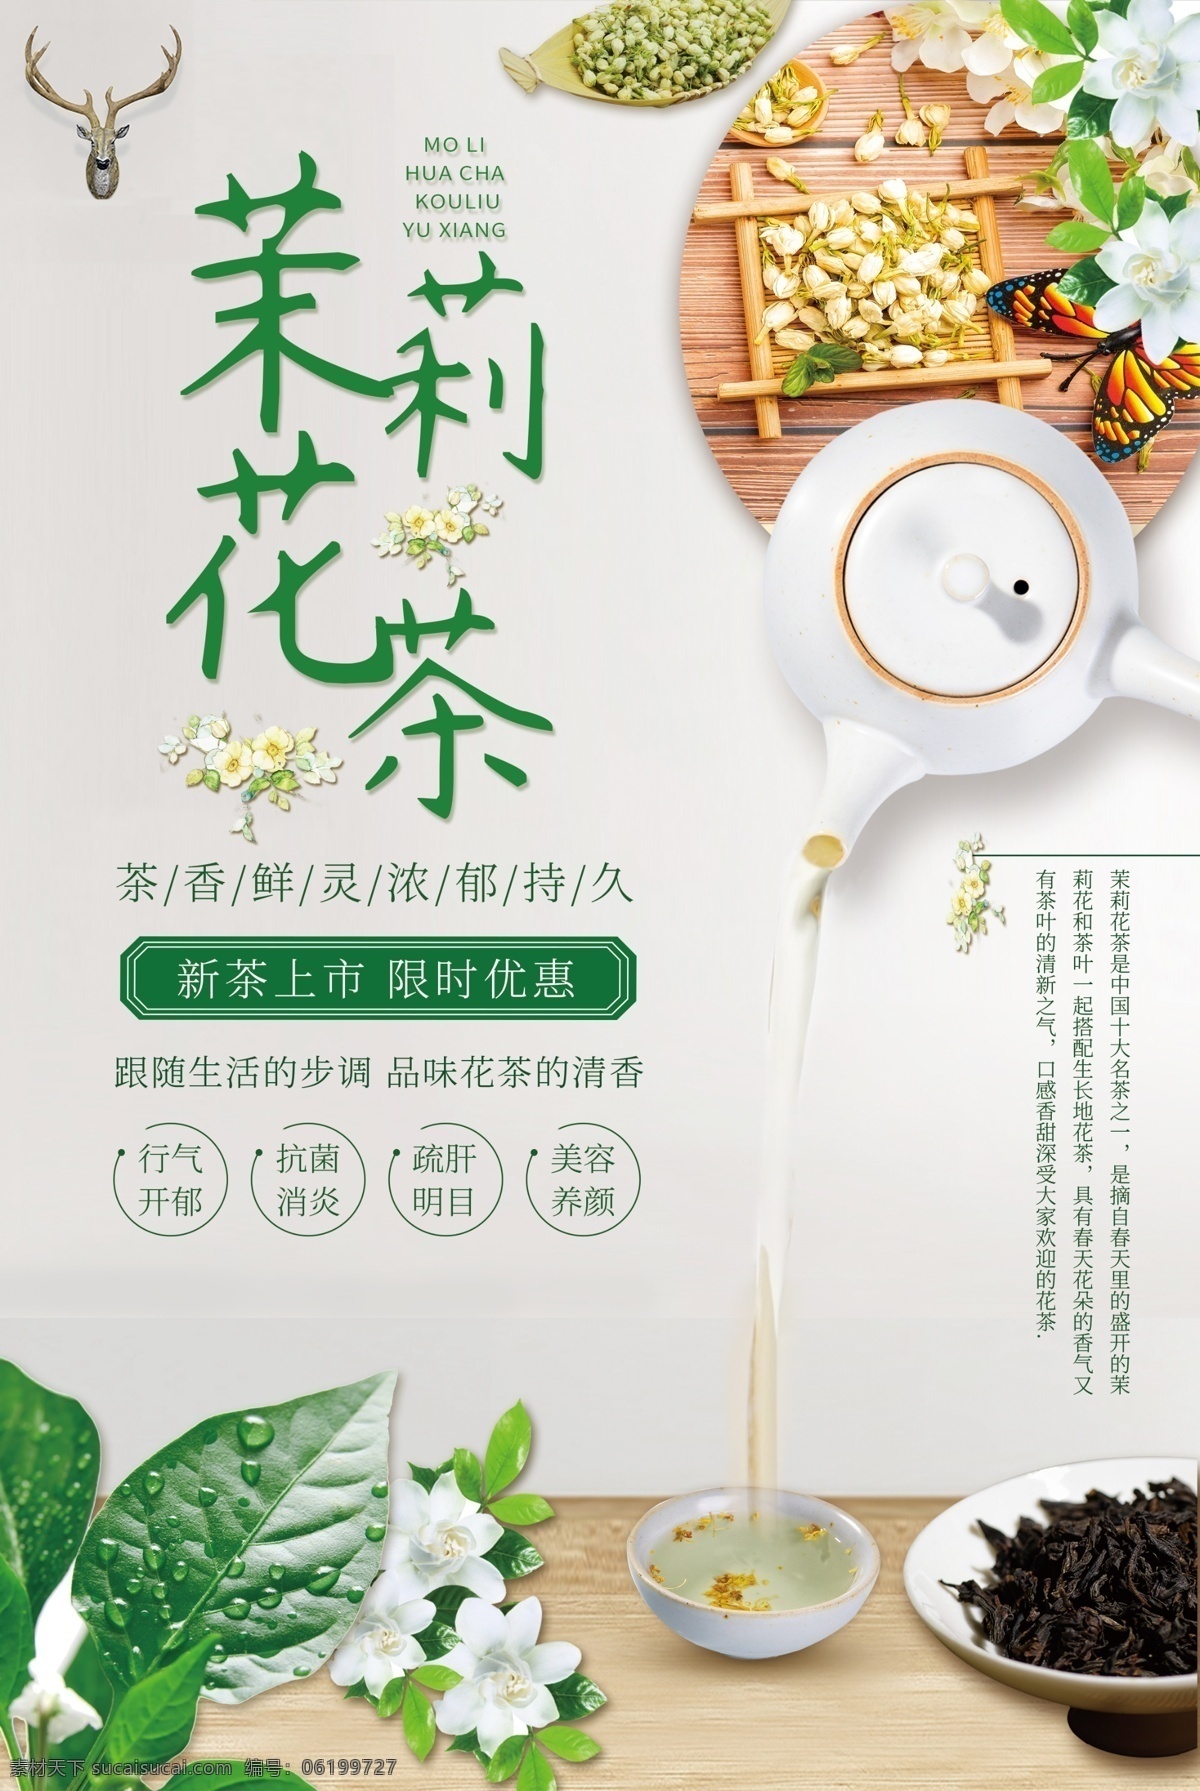 茉莉花茶 茶叶 活动 海报 素材图片 饮料 饮品 甜品 类